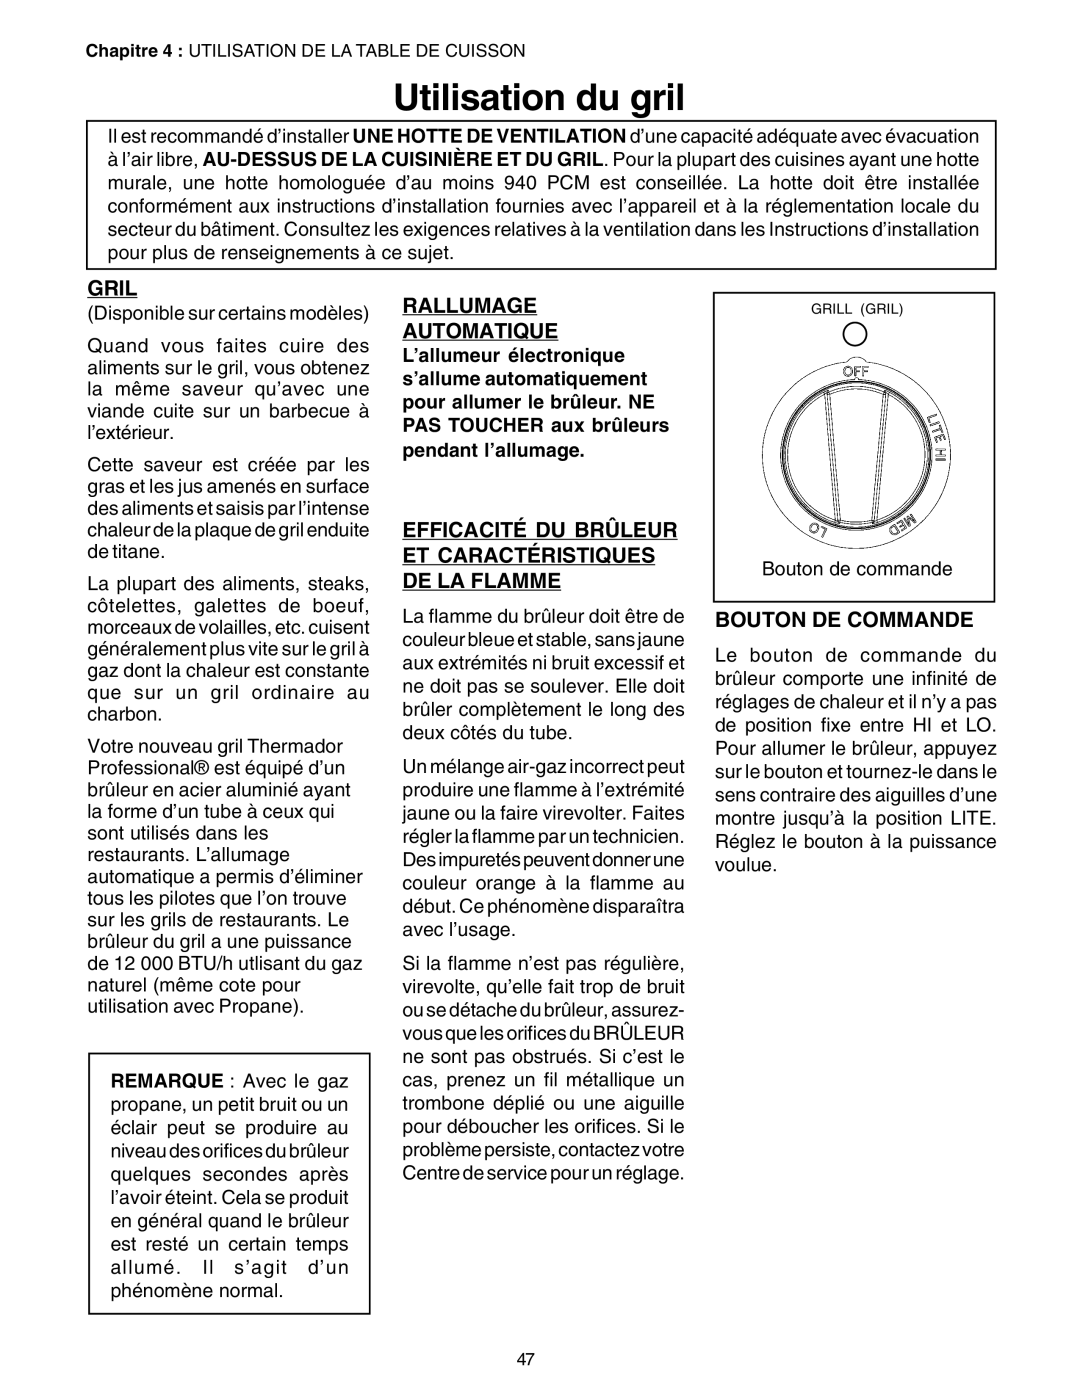 Thermador P24GE Utilisation du gril, Gril, Rallumage Automatique, Efficacité Du Brûleur Et Caractéristiques De La Flamme 